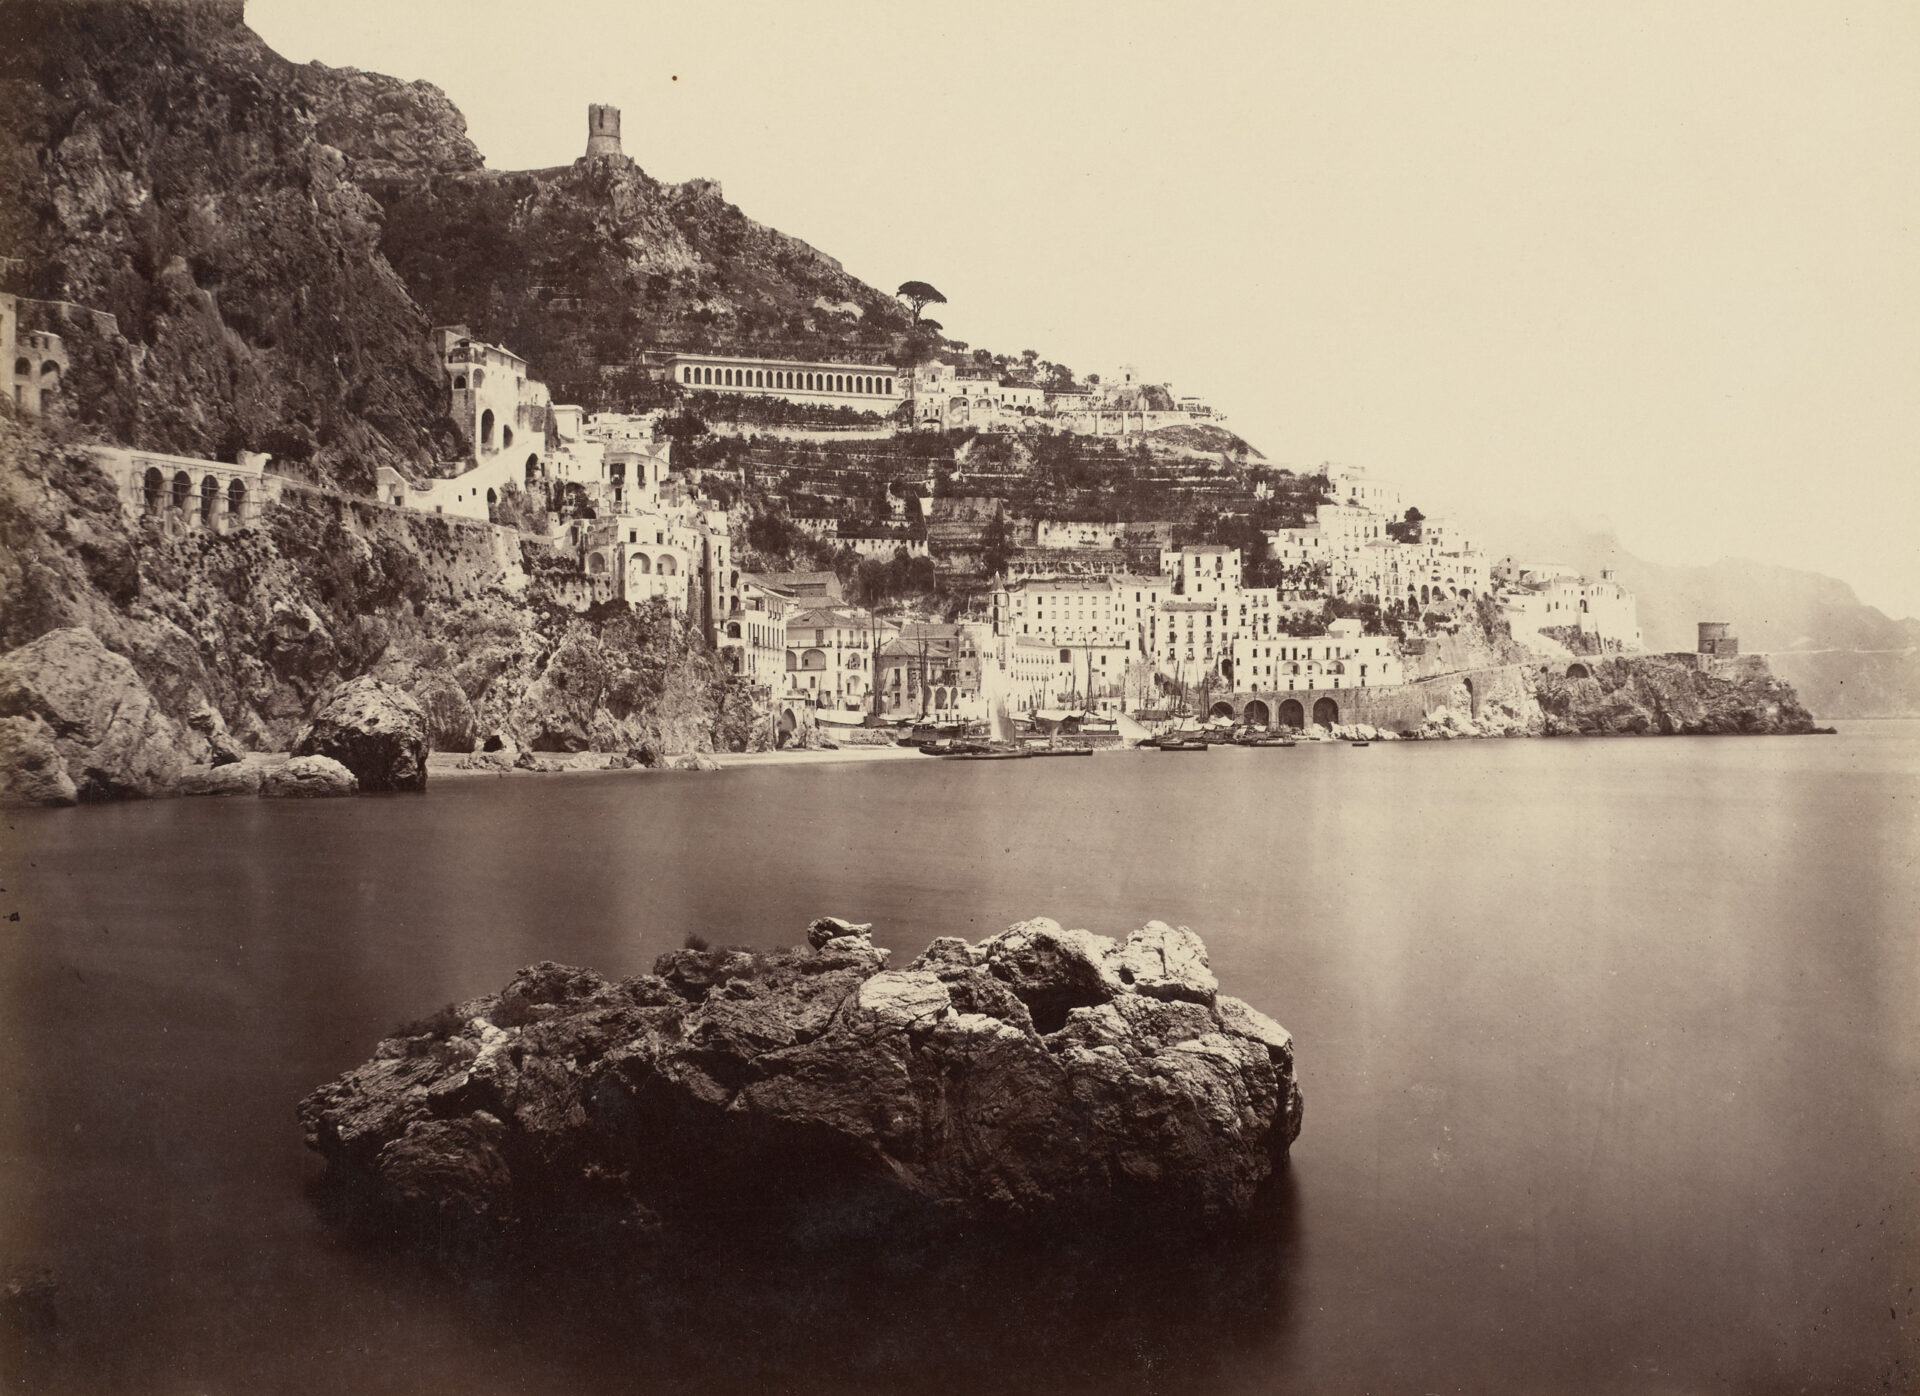 Giorgio Sommer, Amalfi, Blick von der Küste, um 1860–1870, Albuminpapier auf Karton, Städel Museum, Frankfurt am Main, Public Domain